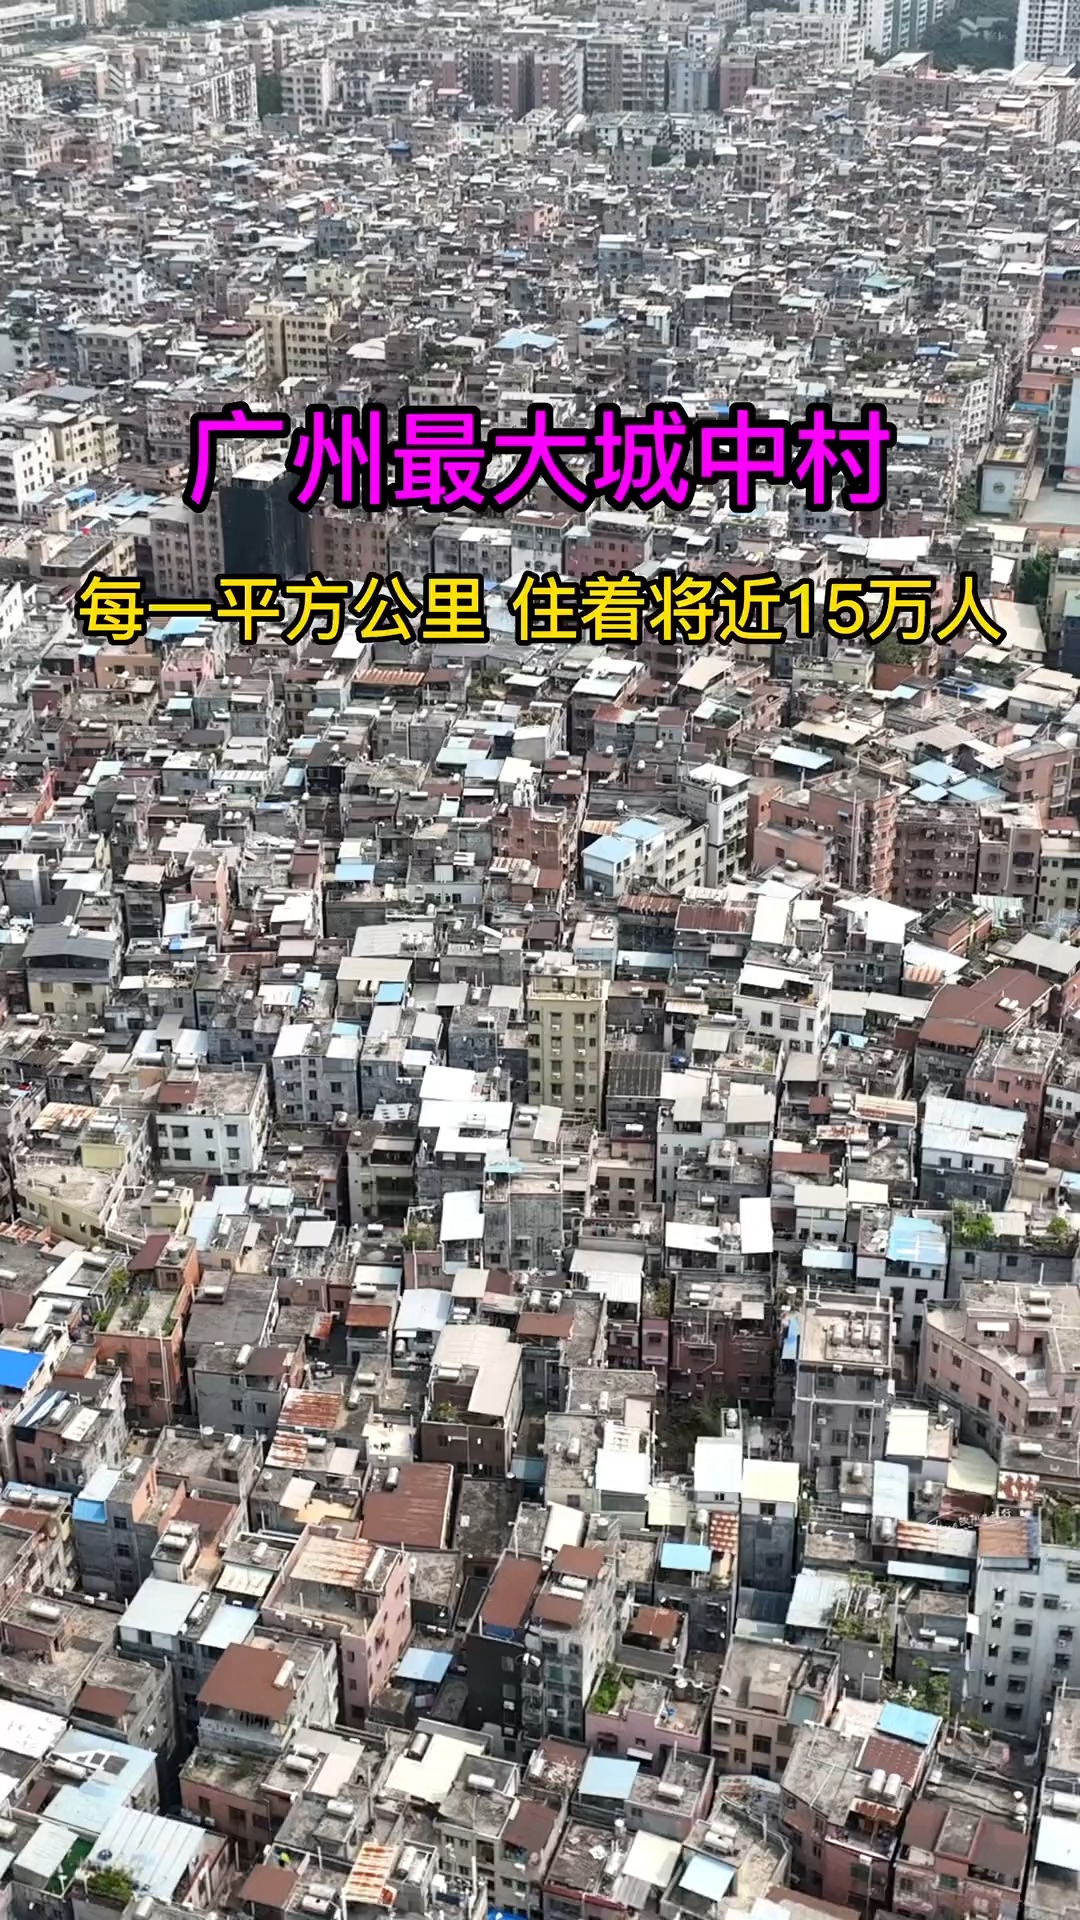  广州最大城中村，每一平方公里住着将近15万人，密密麻麻的房子不是理想的居住地，却是多少广漂人梦想的起点，还记得你来广州的落脚点吗？